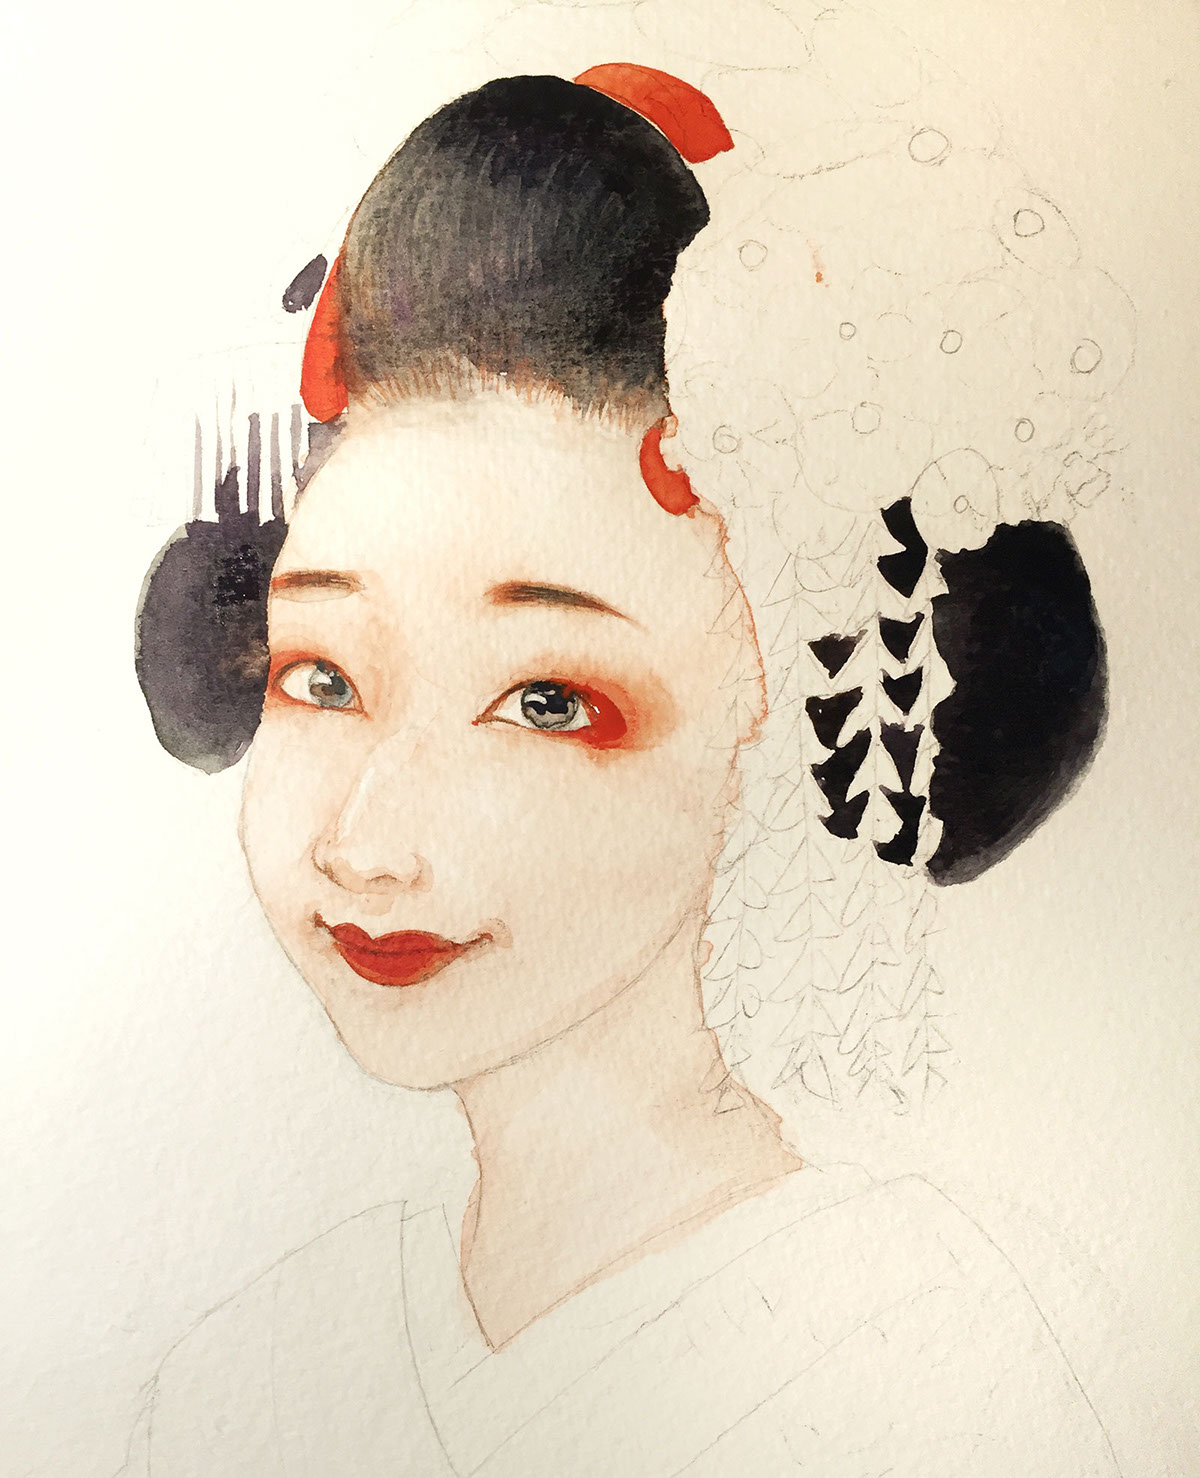 geisha gisaeng japan Korea watercolor handdrawing